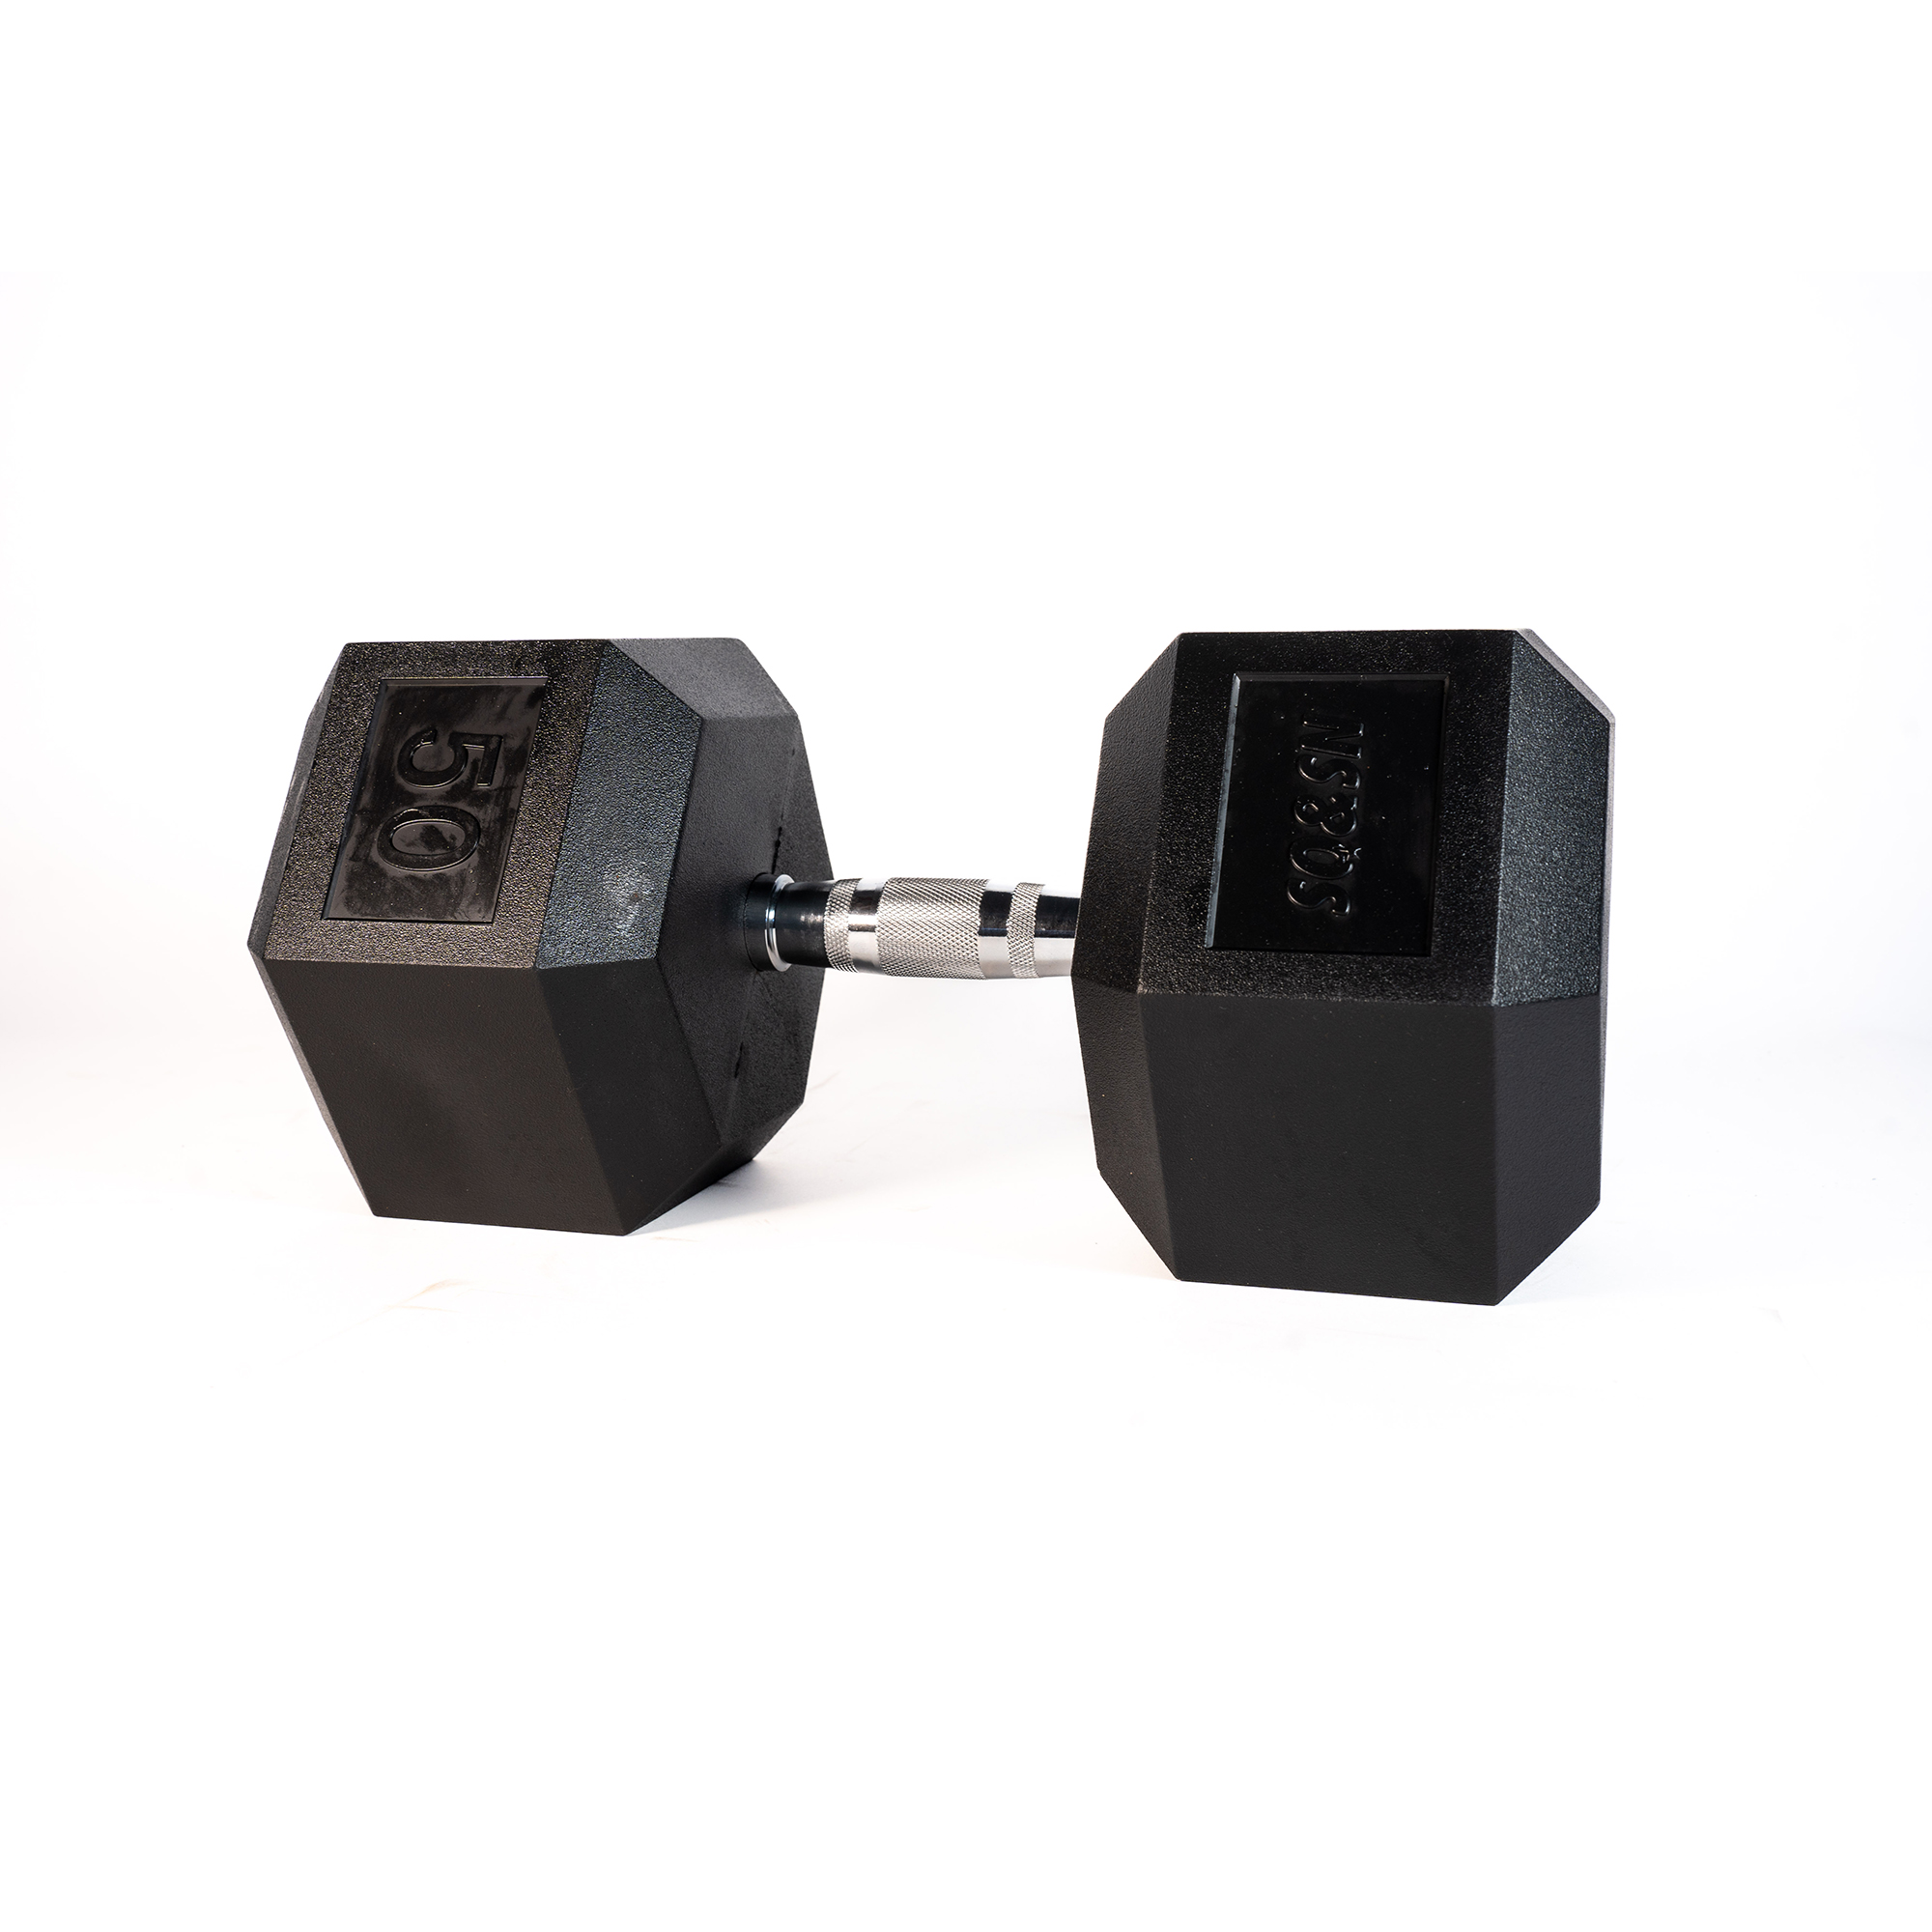 Brug SQ&SN Hexagon Håndvægt (50 kg) med forkromet greb. Udstyr til crossfit træning, styrketræning og funktionel træning til en forbedret oplevelse